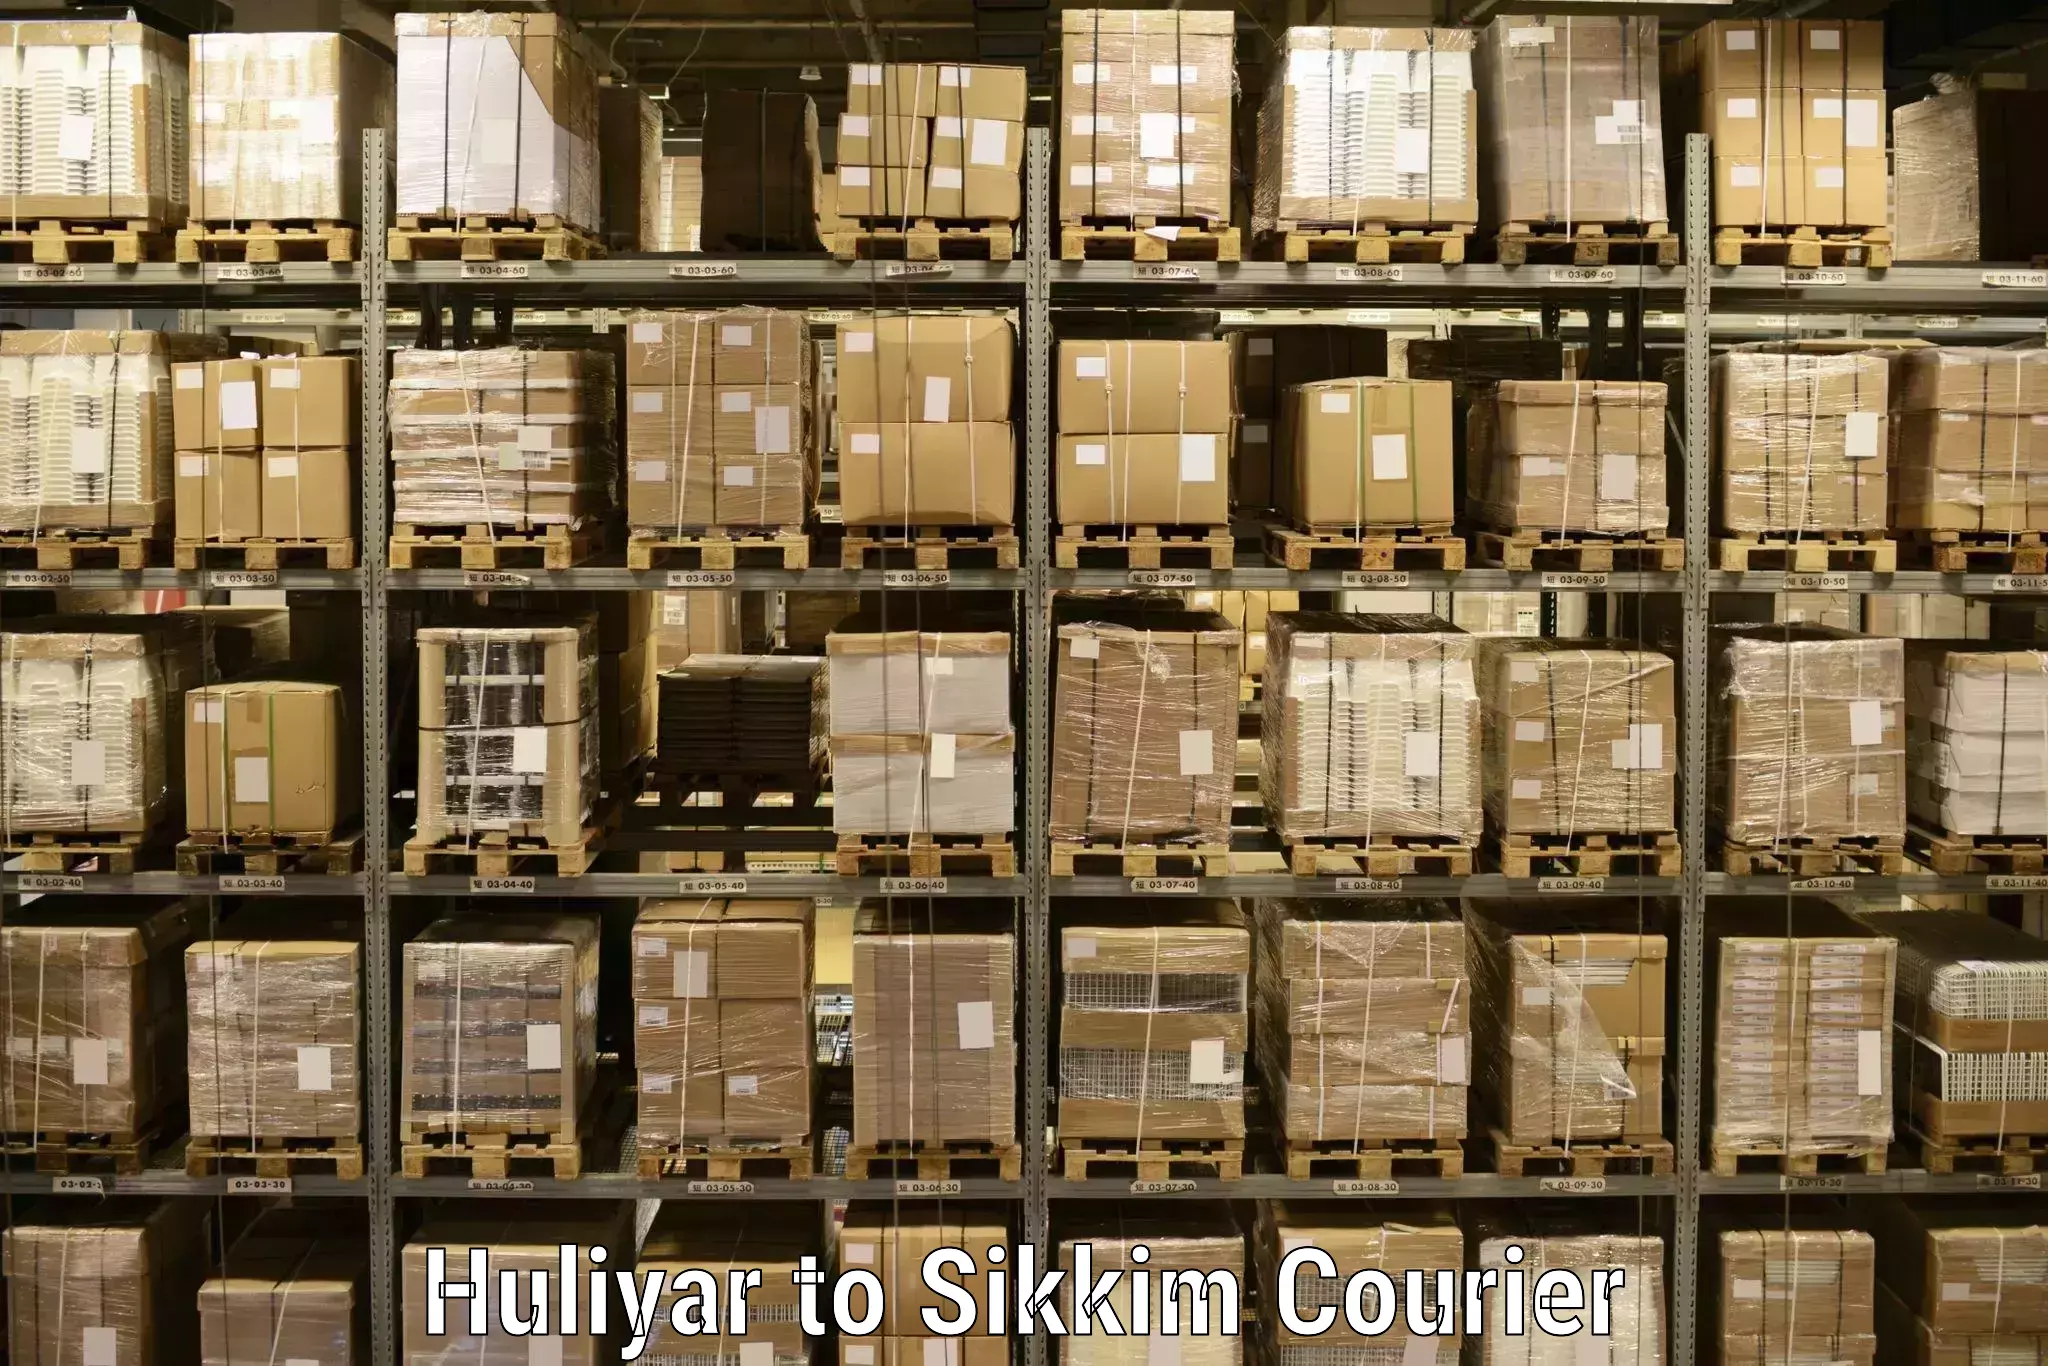 Express logistics providers Huliyar to Mangan